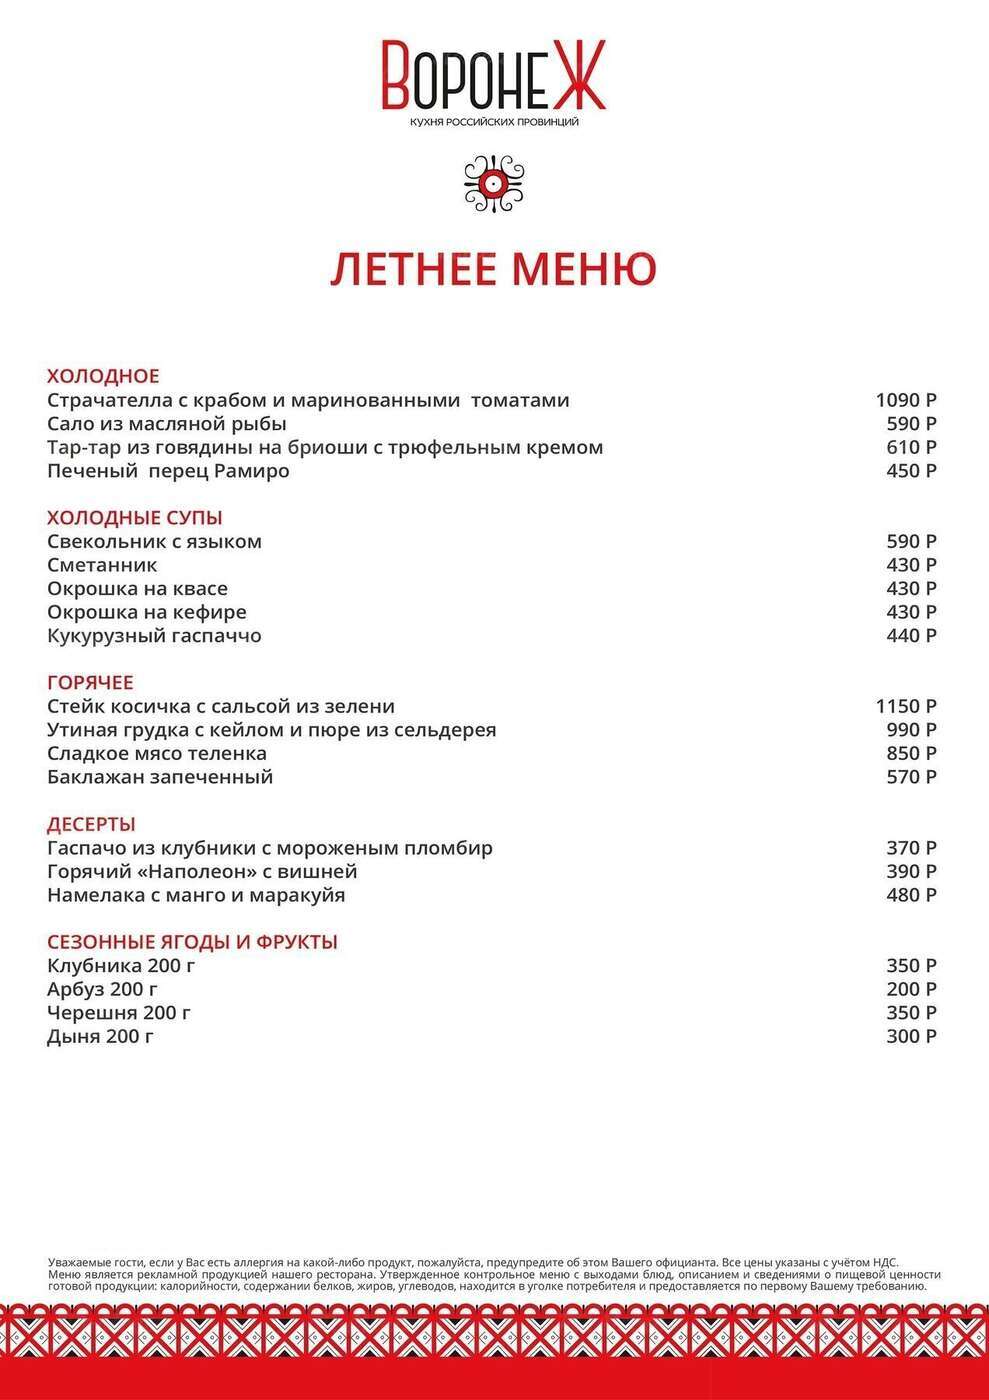 Ресторан Воронеж Москва меню. 1586 воронеж ресторан меню